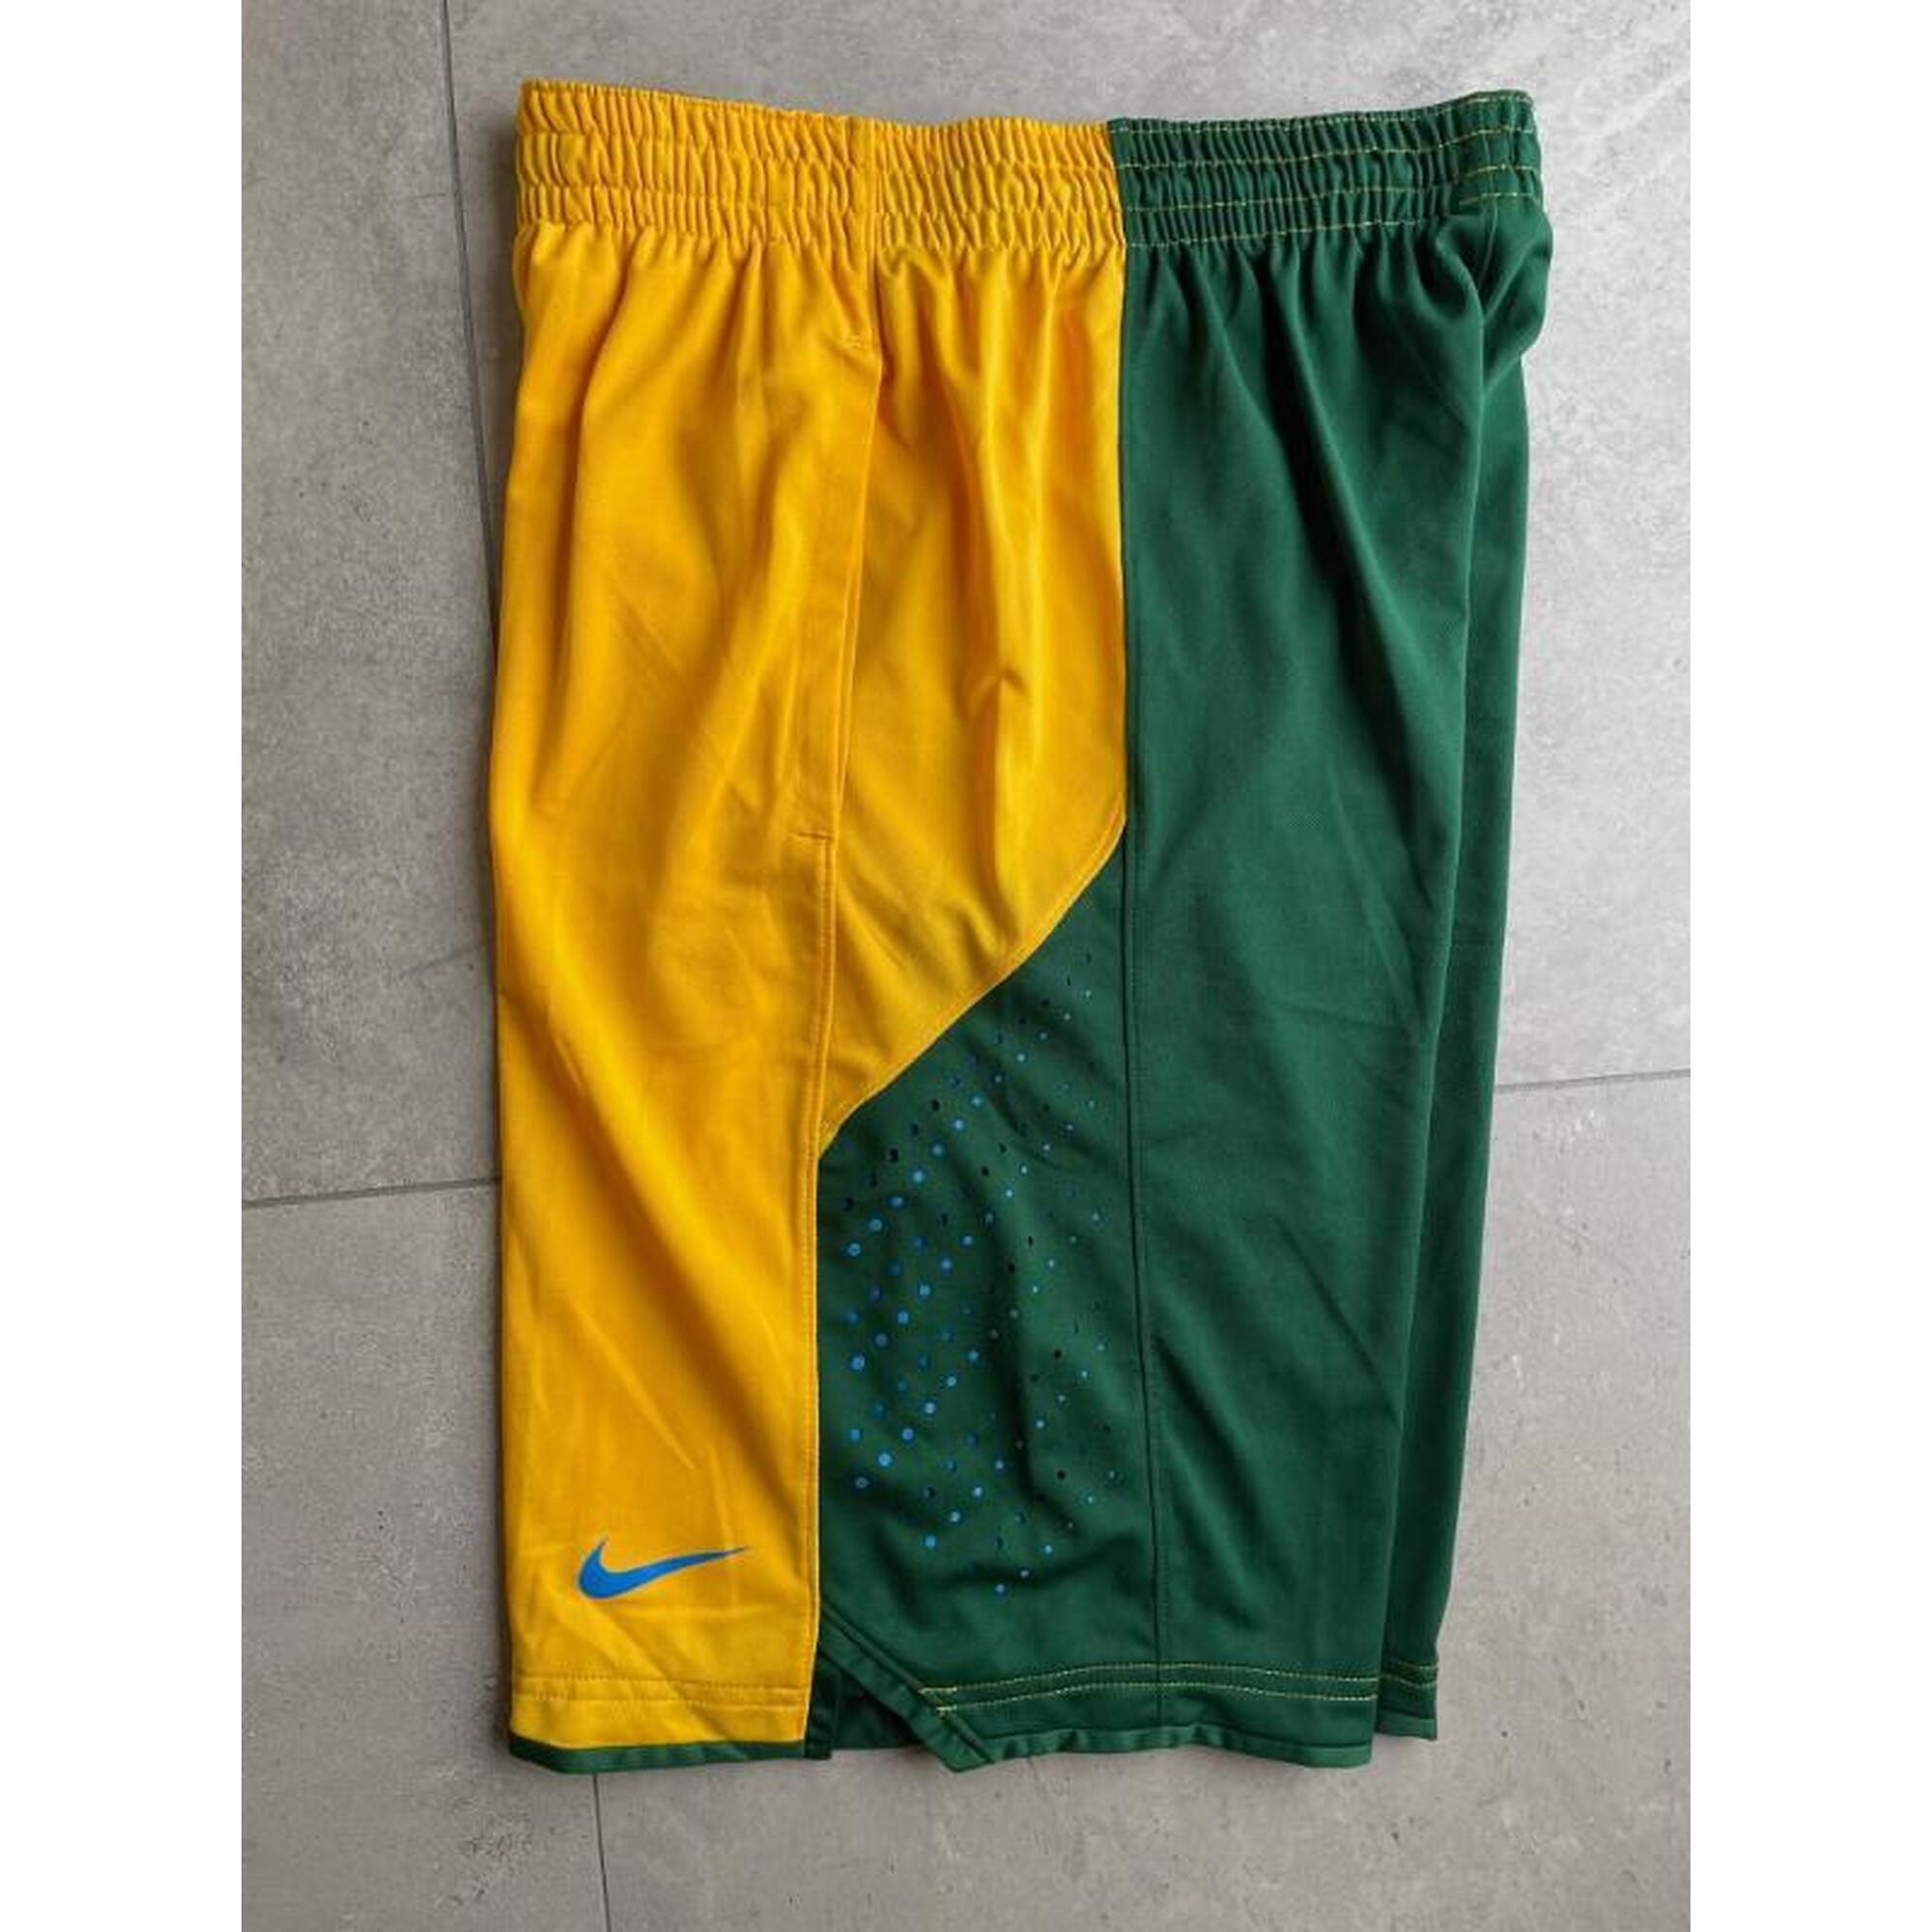 C2C - Short de basket Nike jaune/vert